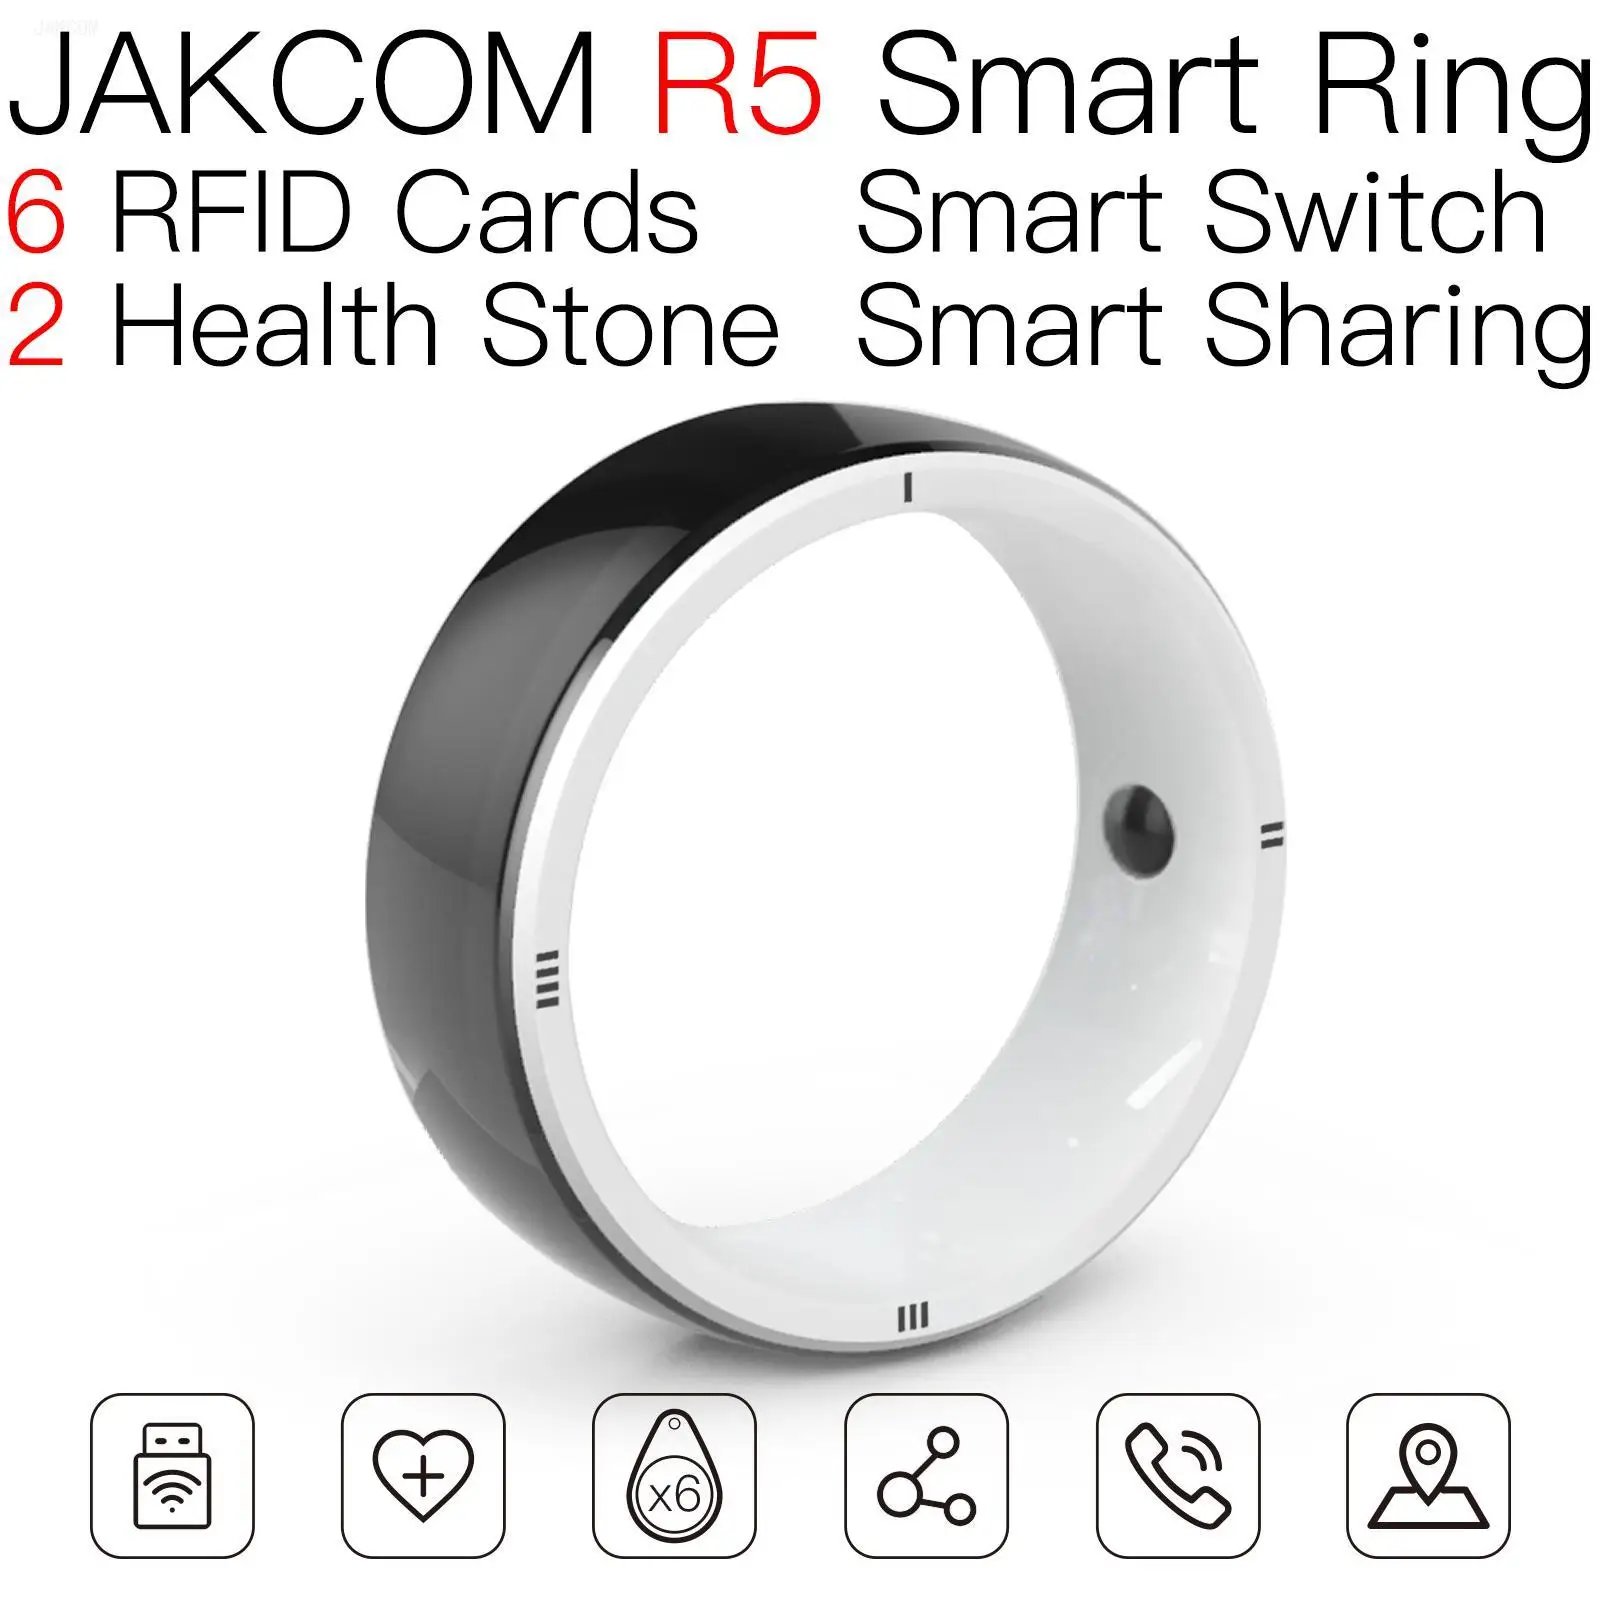 

Умное кольцо JAKCOM R5 лучше, чем бирки gps, 10 шт. телефонов, Управляйте идентификационной картой США, videoland, первоклассная бирка на 1 год, стандартная металлическая бирка